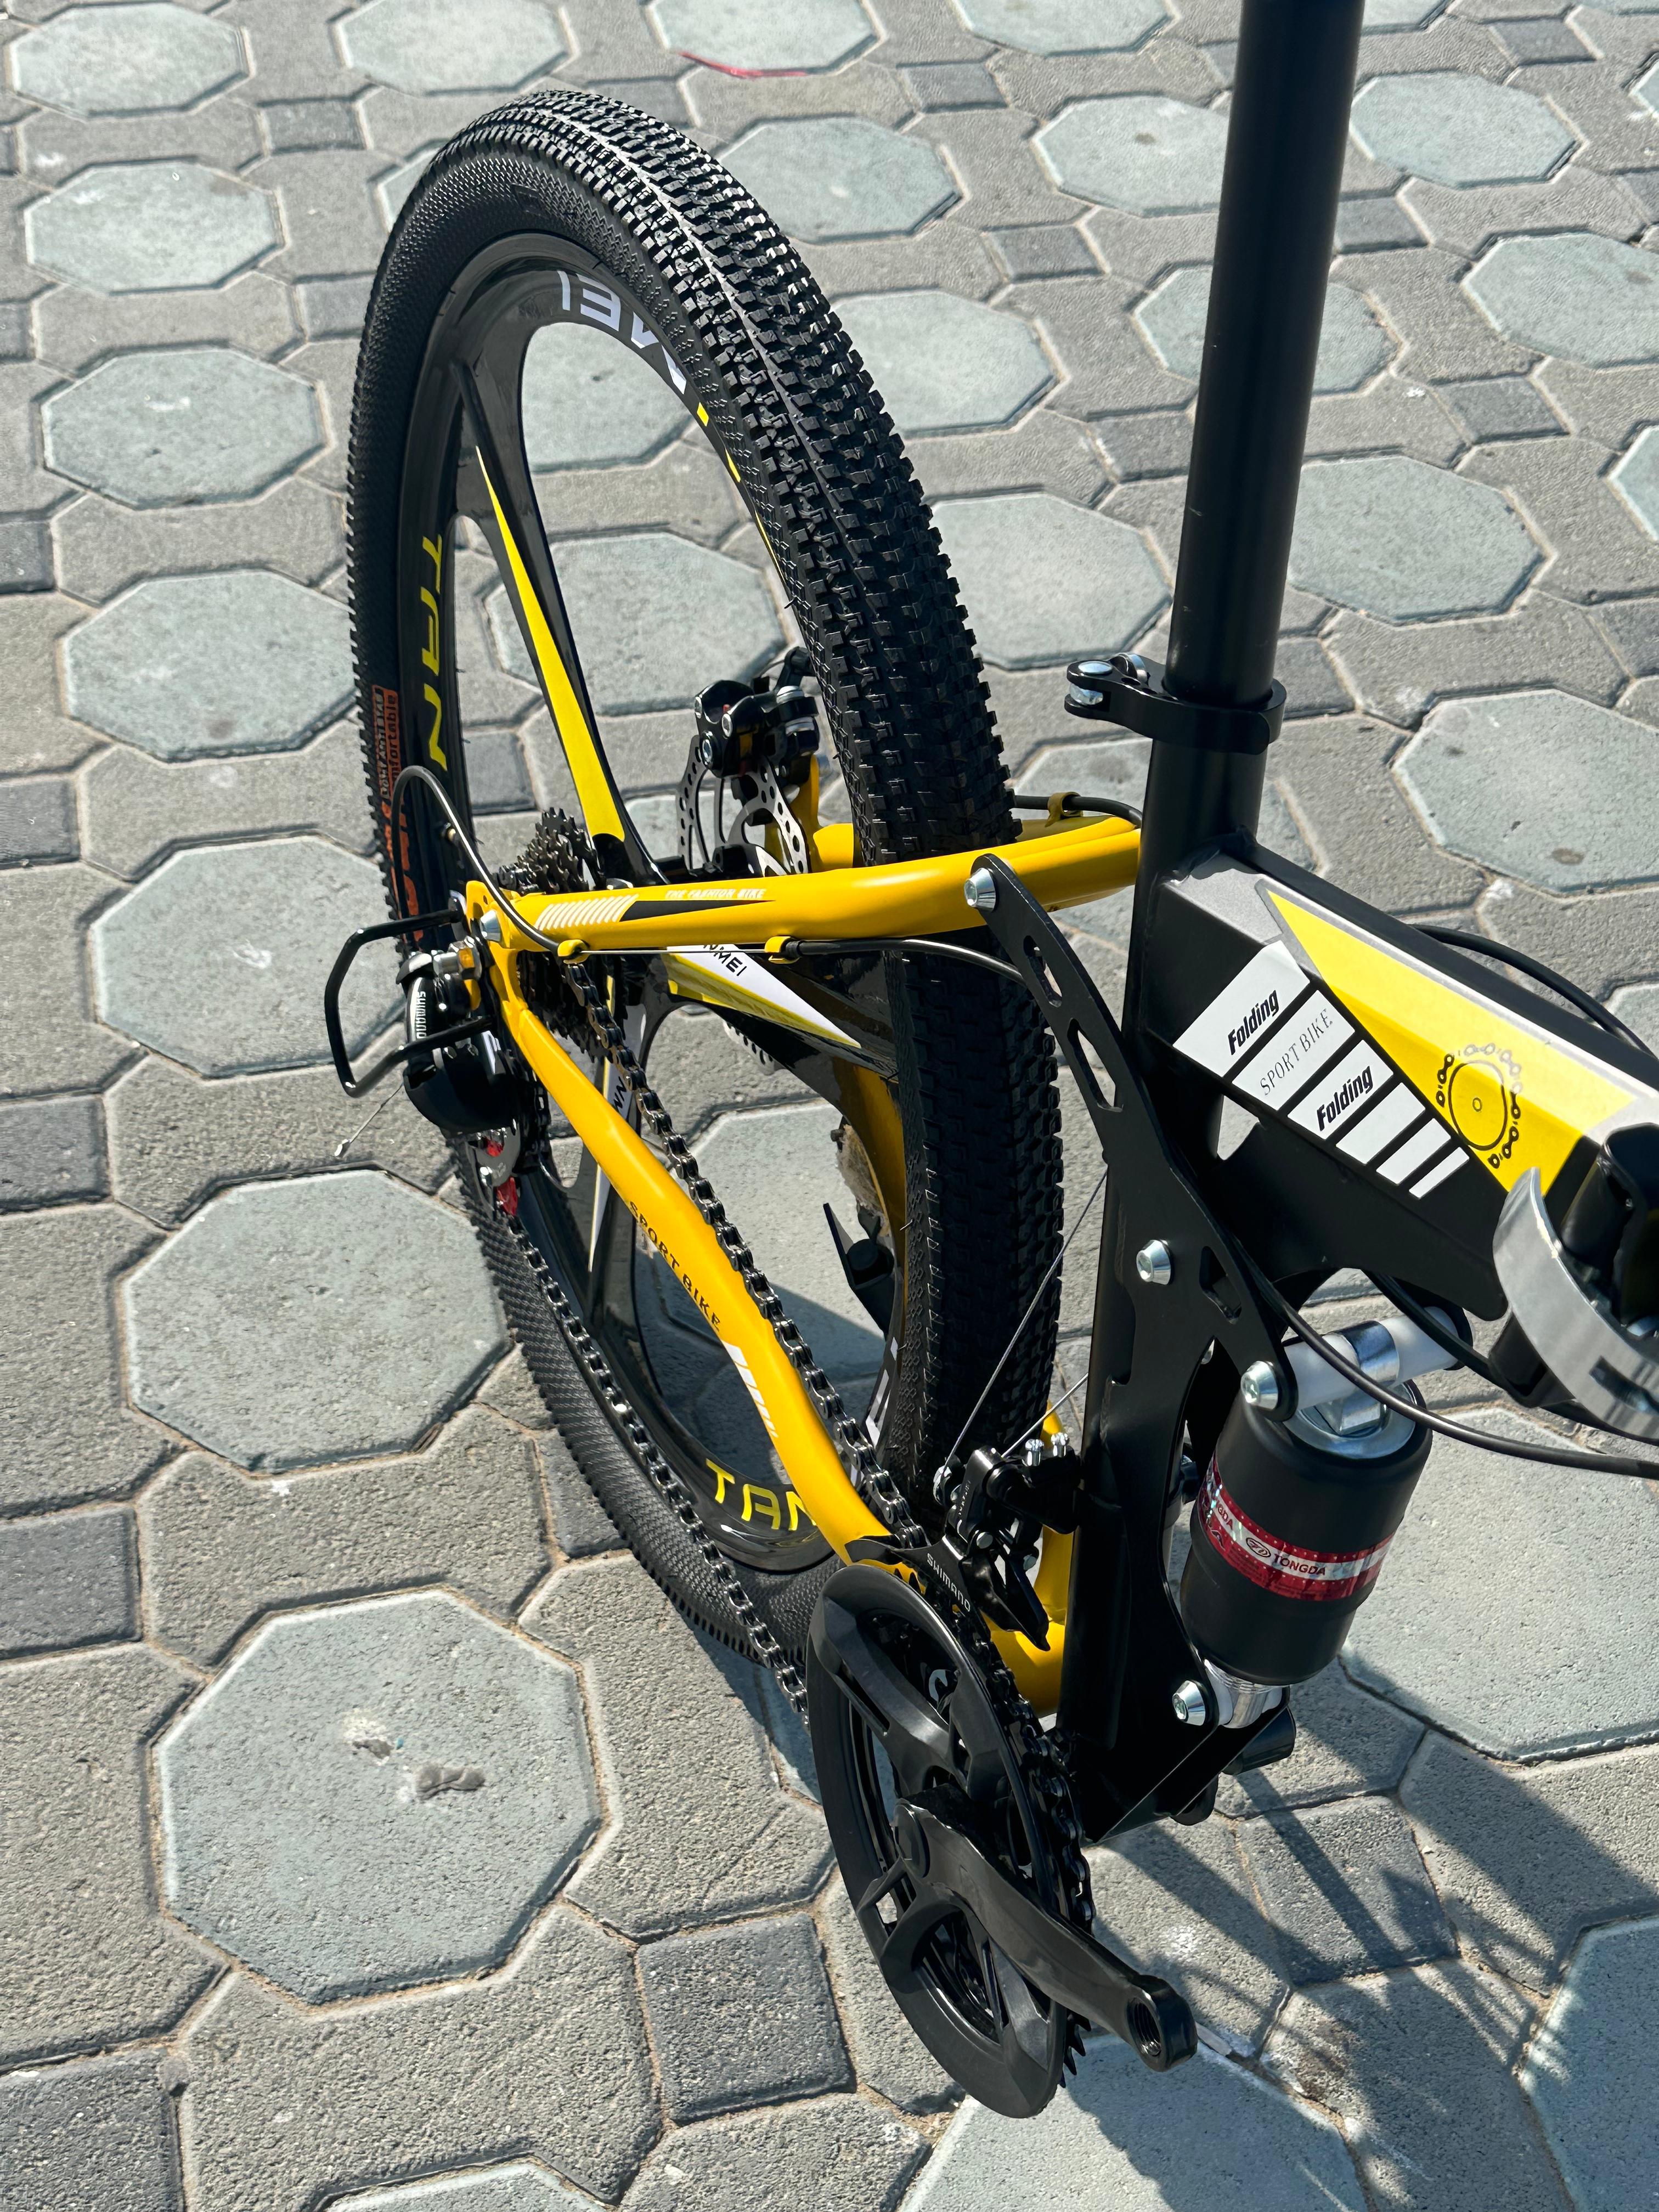 دوچرخه تاشو سایز ۲۶ ، ۲۴ و ۲۷   LAND ROVER (سفارش اروپا)  رینگ‌ سه پره رنگ مشکی زرد